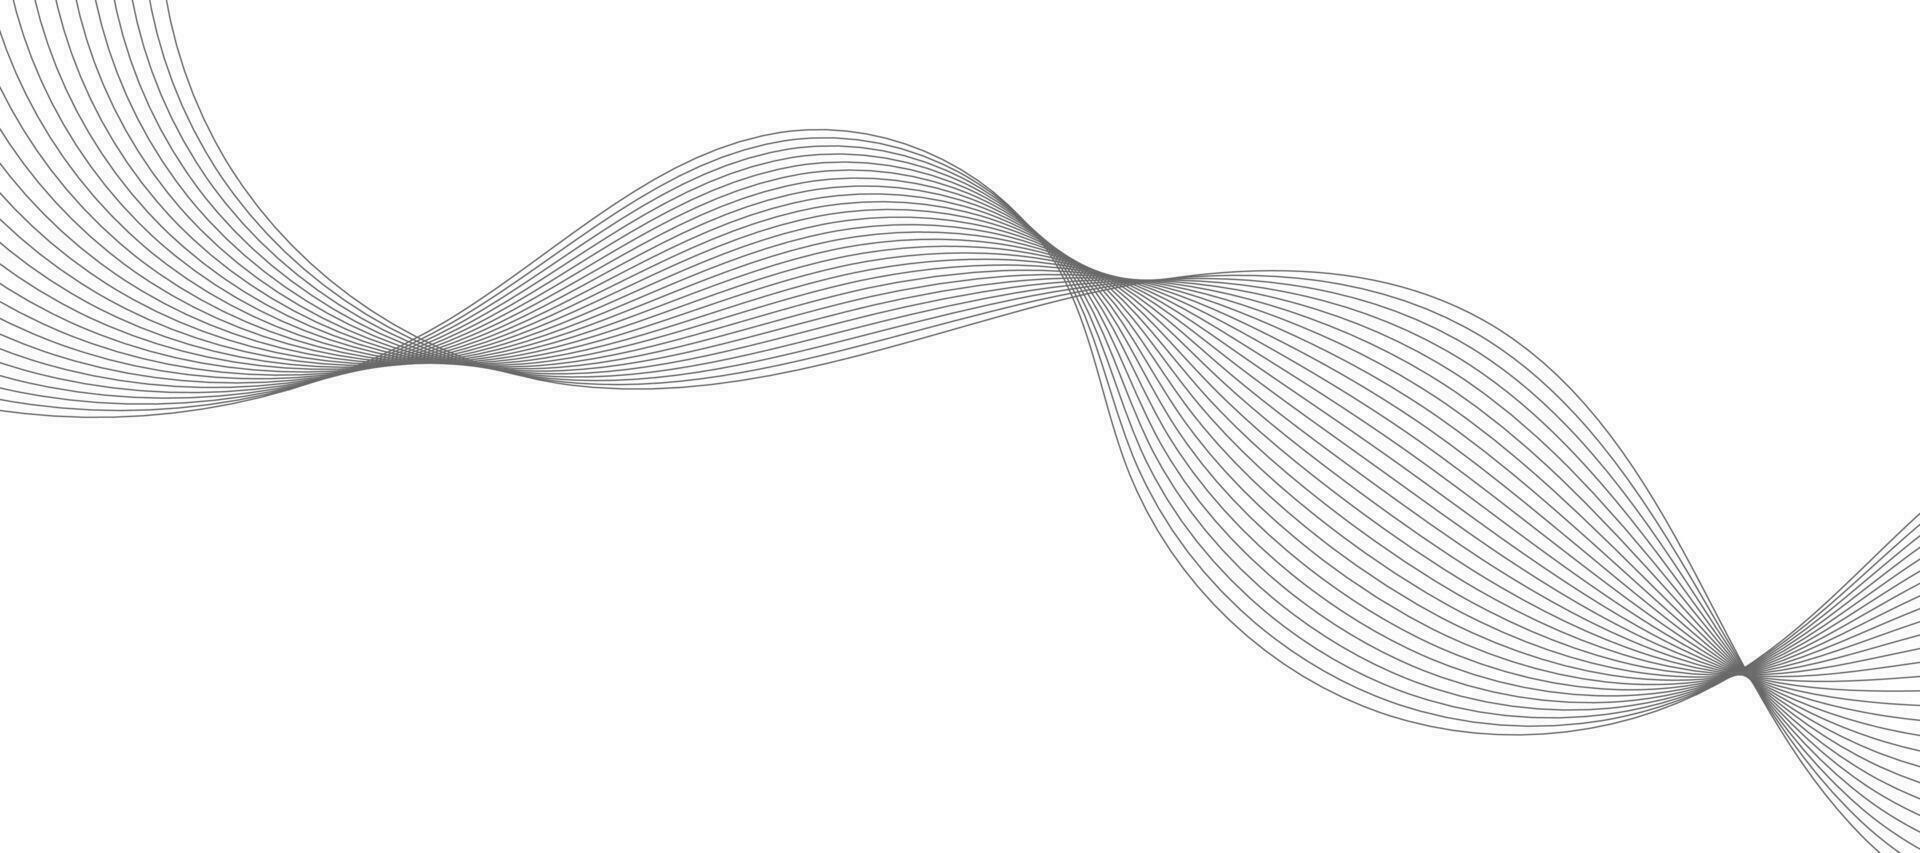 abstrakt våg element för design. digital frekvensspårequalizer. stiliserad linjekonst bakgrund. vektor illustration. våg med linjer skapade med hjälp av blandningsverktyget. böjd vågig linje, slät rand.